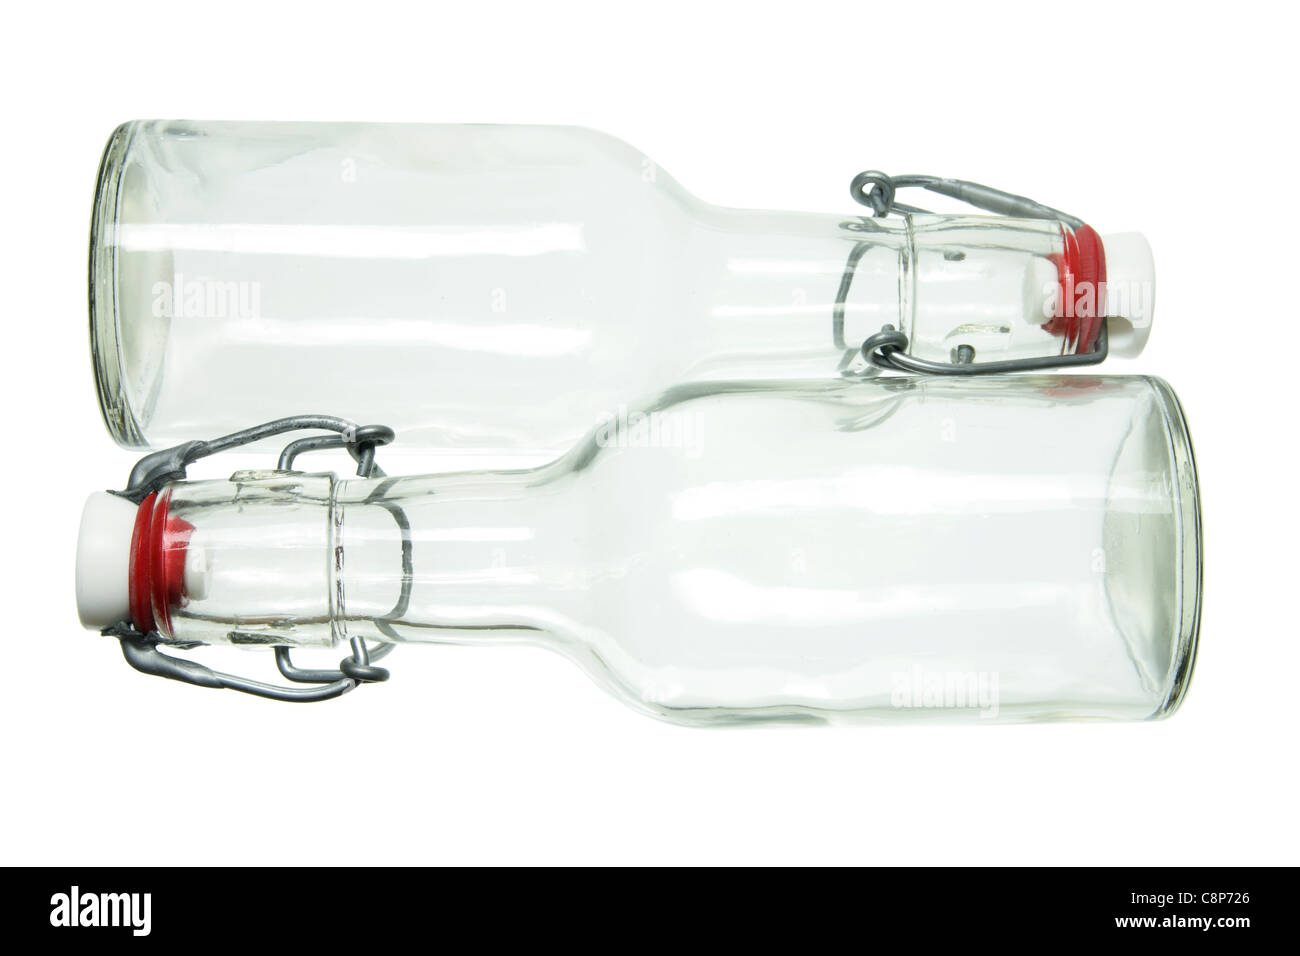 Glas-Flaschen Stockfoto